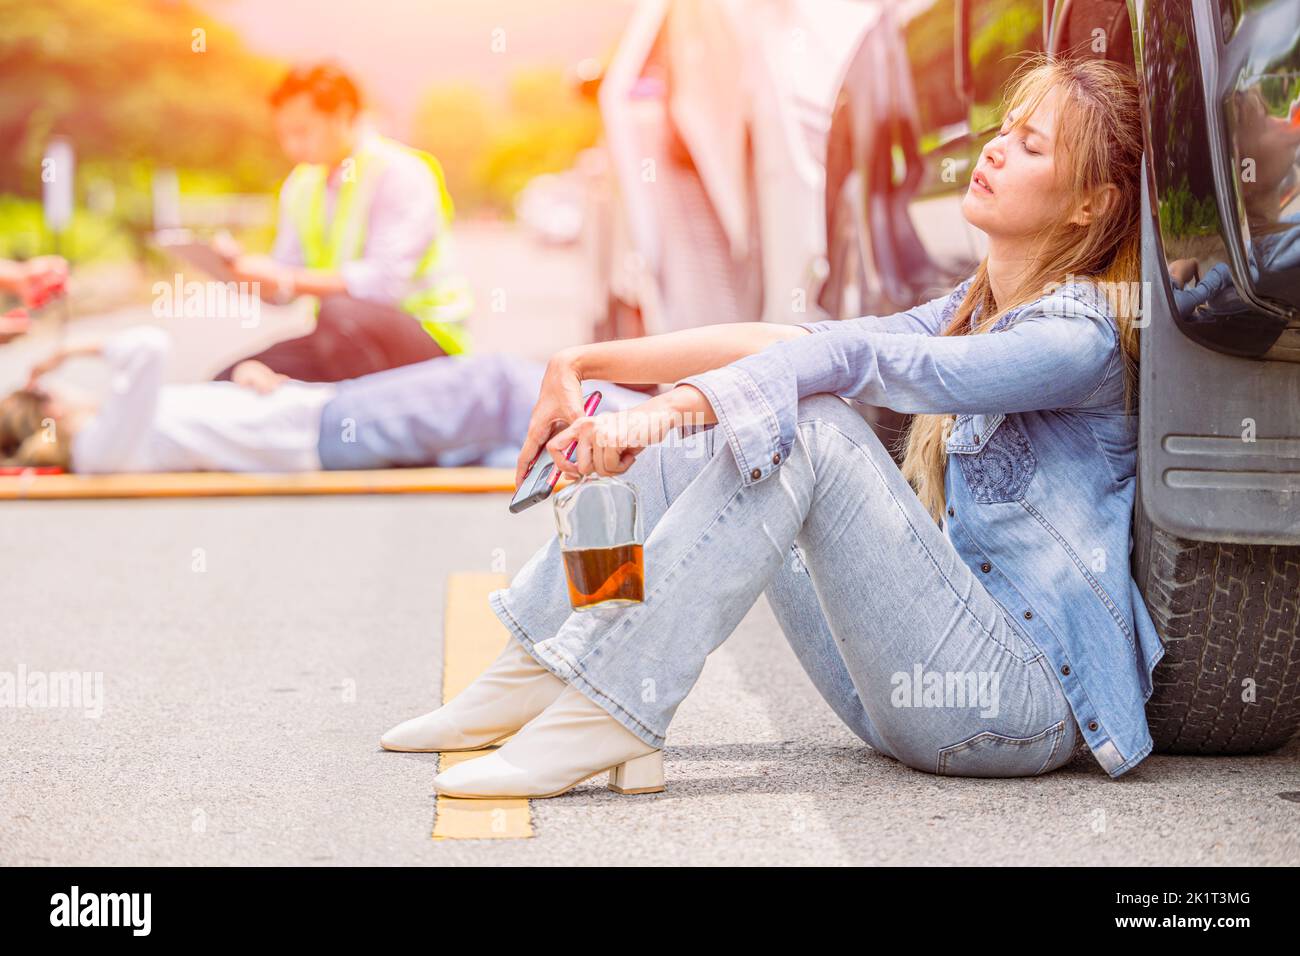 les adolescentes buvaient de l'alcool pendant la conduite un accident de voiture au bord de la route dormir inconscient Banque D'Images